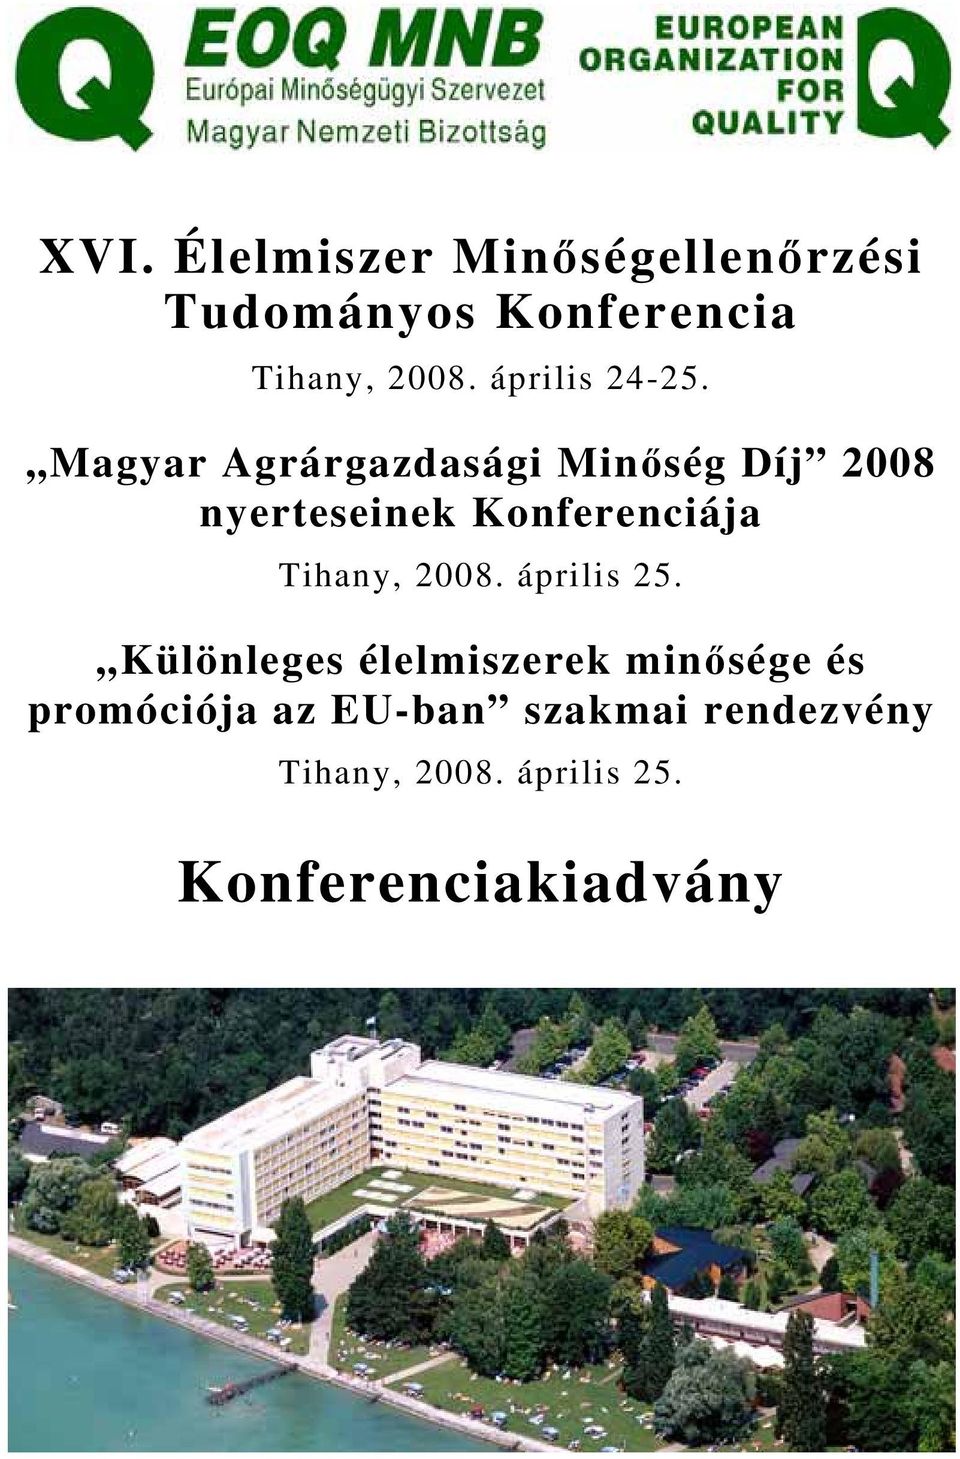 Magyar Agrárgazdasági Minőség Díj 2008 nyerteseinek Konferenciája Tihany,